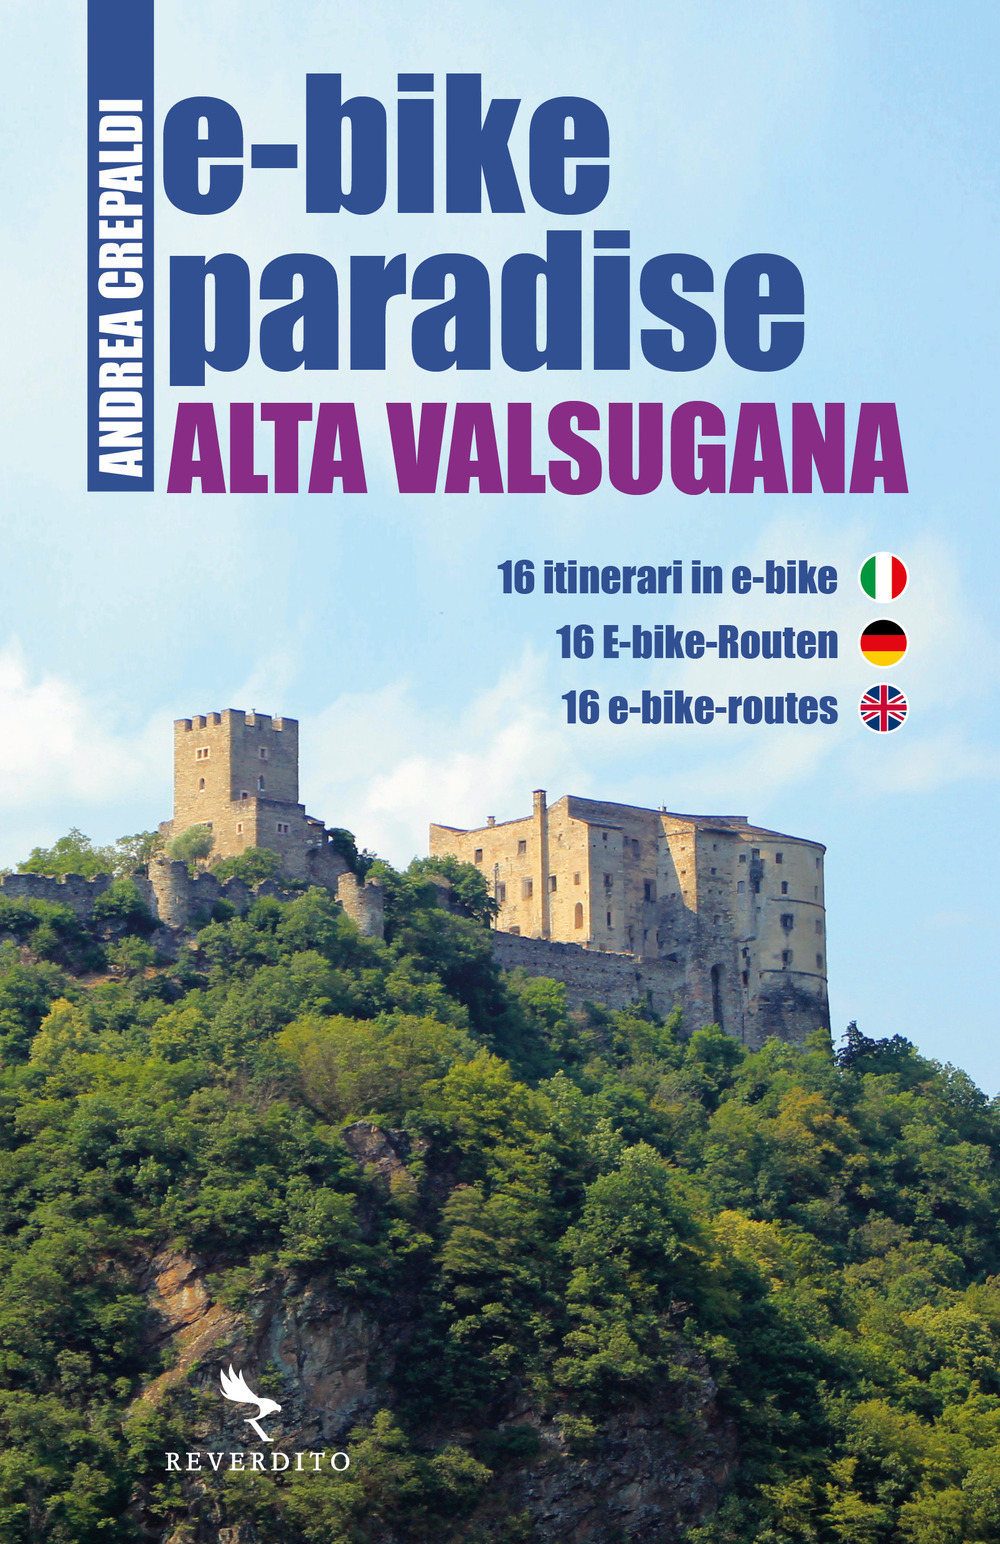 E-bike paradise. Alta Valsugana. 16 itinerari in e-bike. Ediz. italiana, inglese e tedesca. Con Contenuto digitale per download e accesso on line